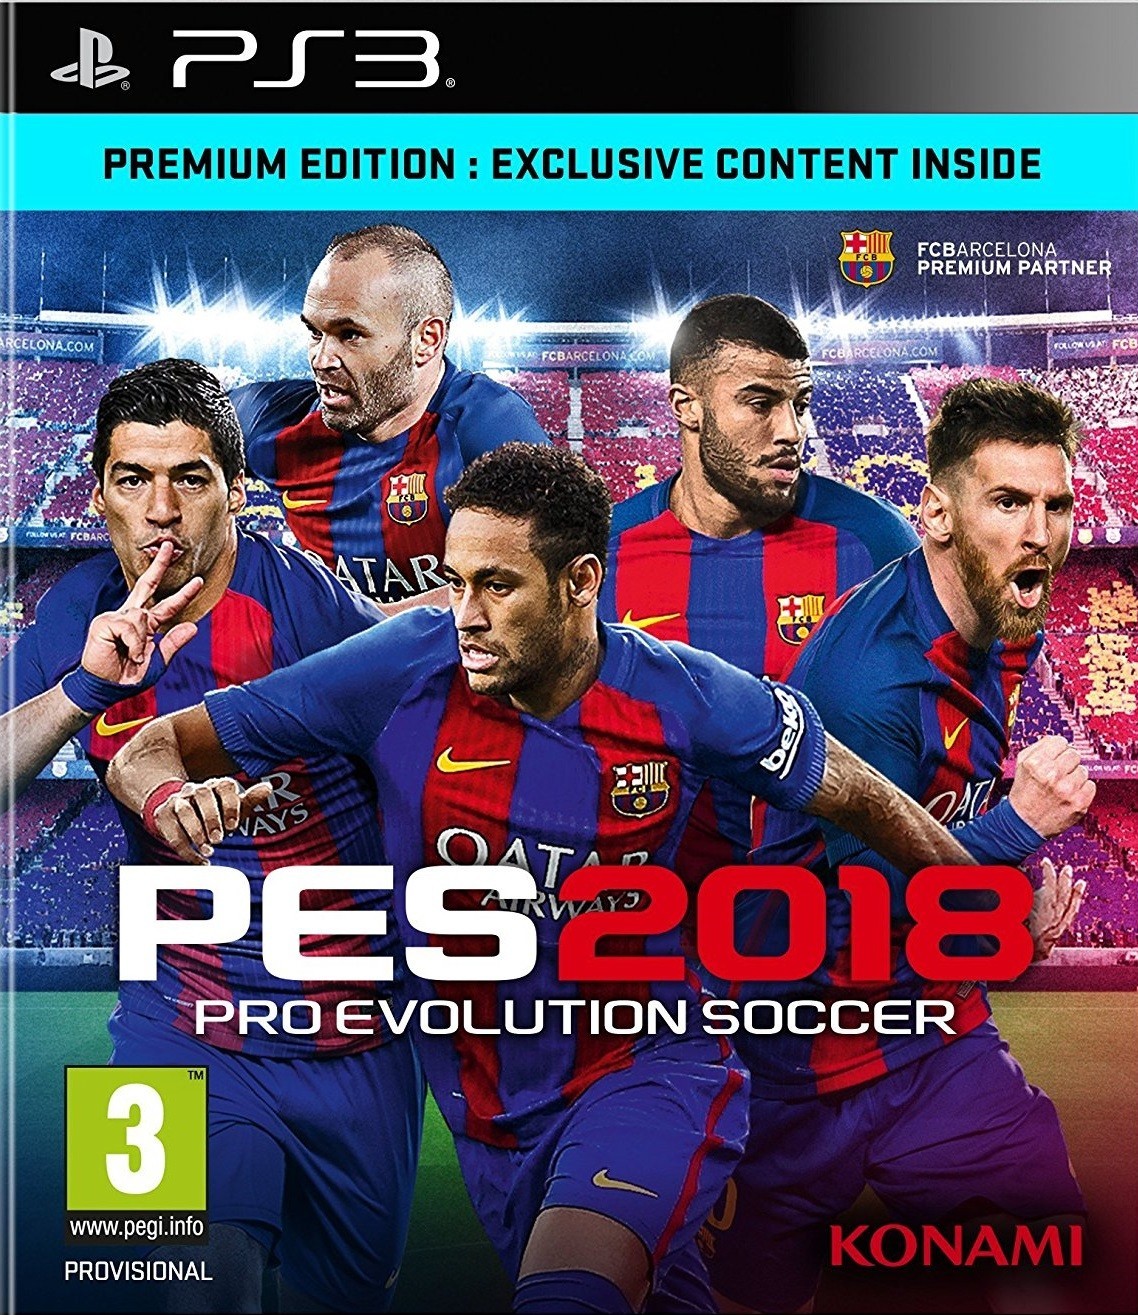 Pro Evolution Soccer 2018 (PS3), Konami